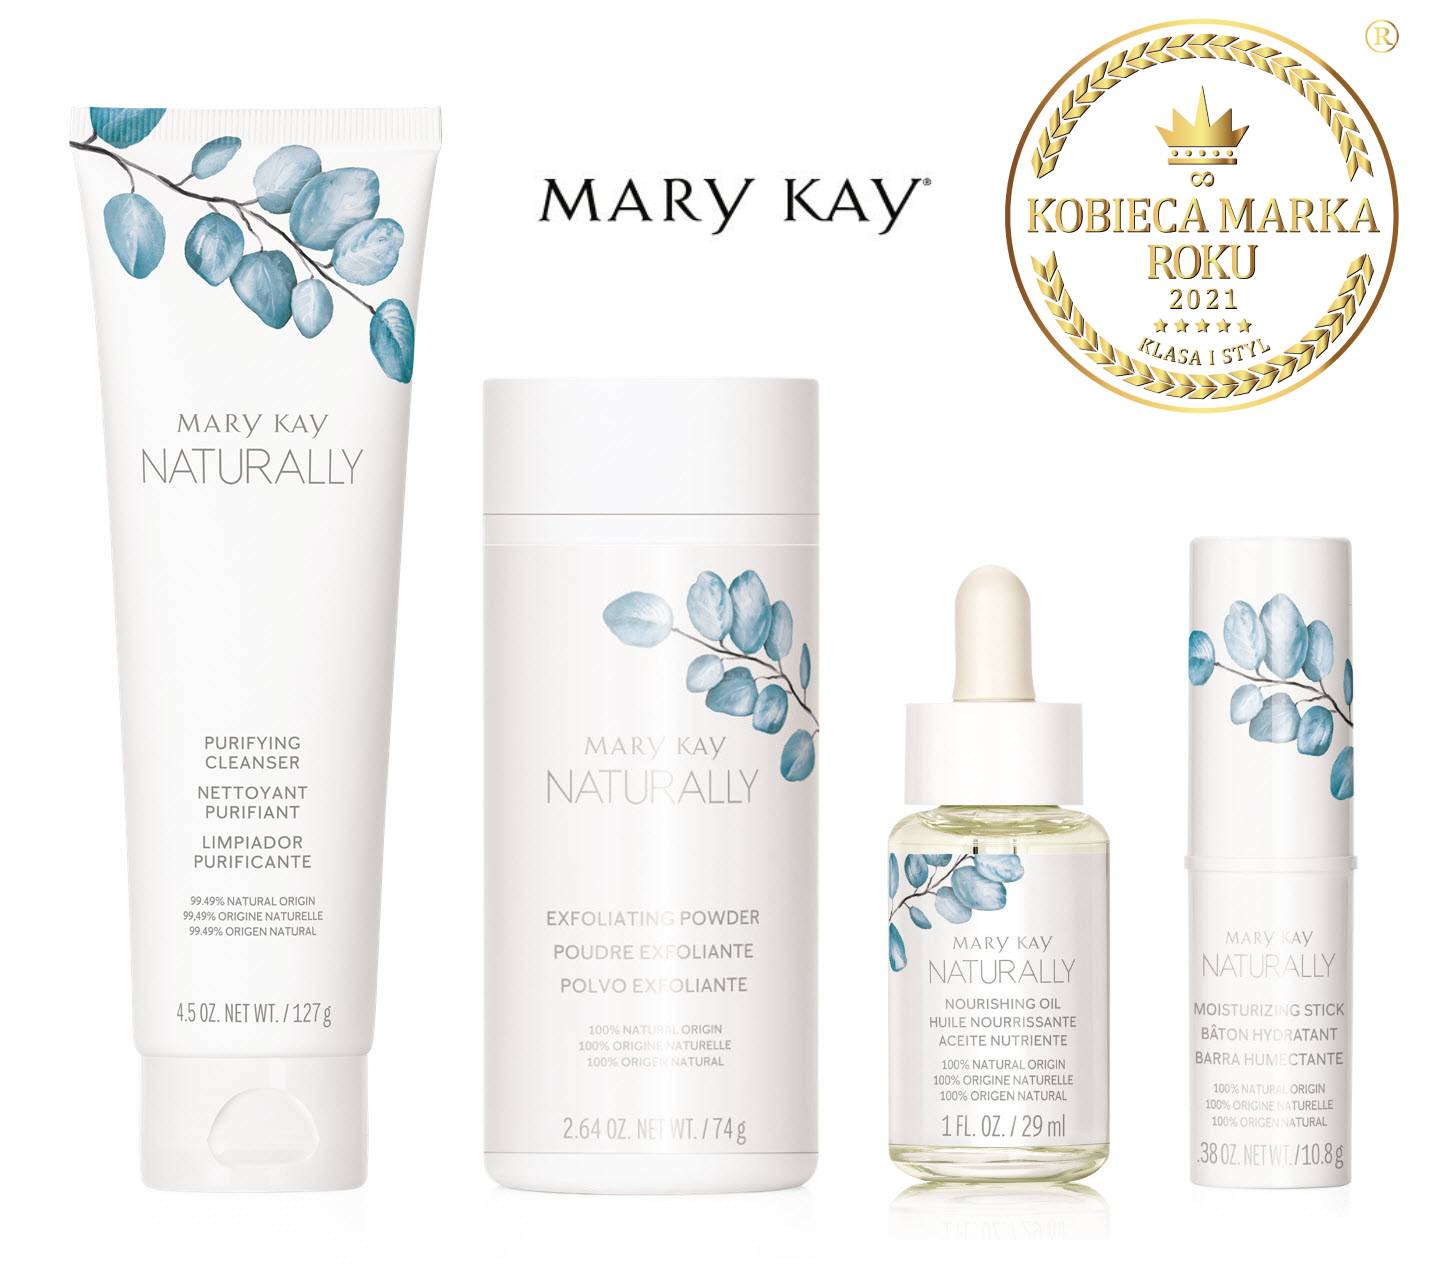 Linia Naturally® Mary Kay - odpowiedź na nowoczesne potrzeby kobiet!